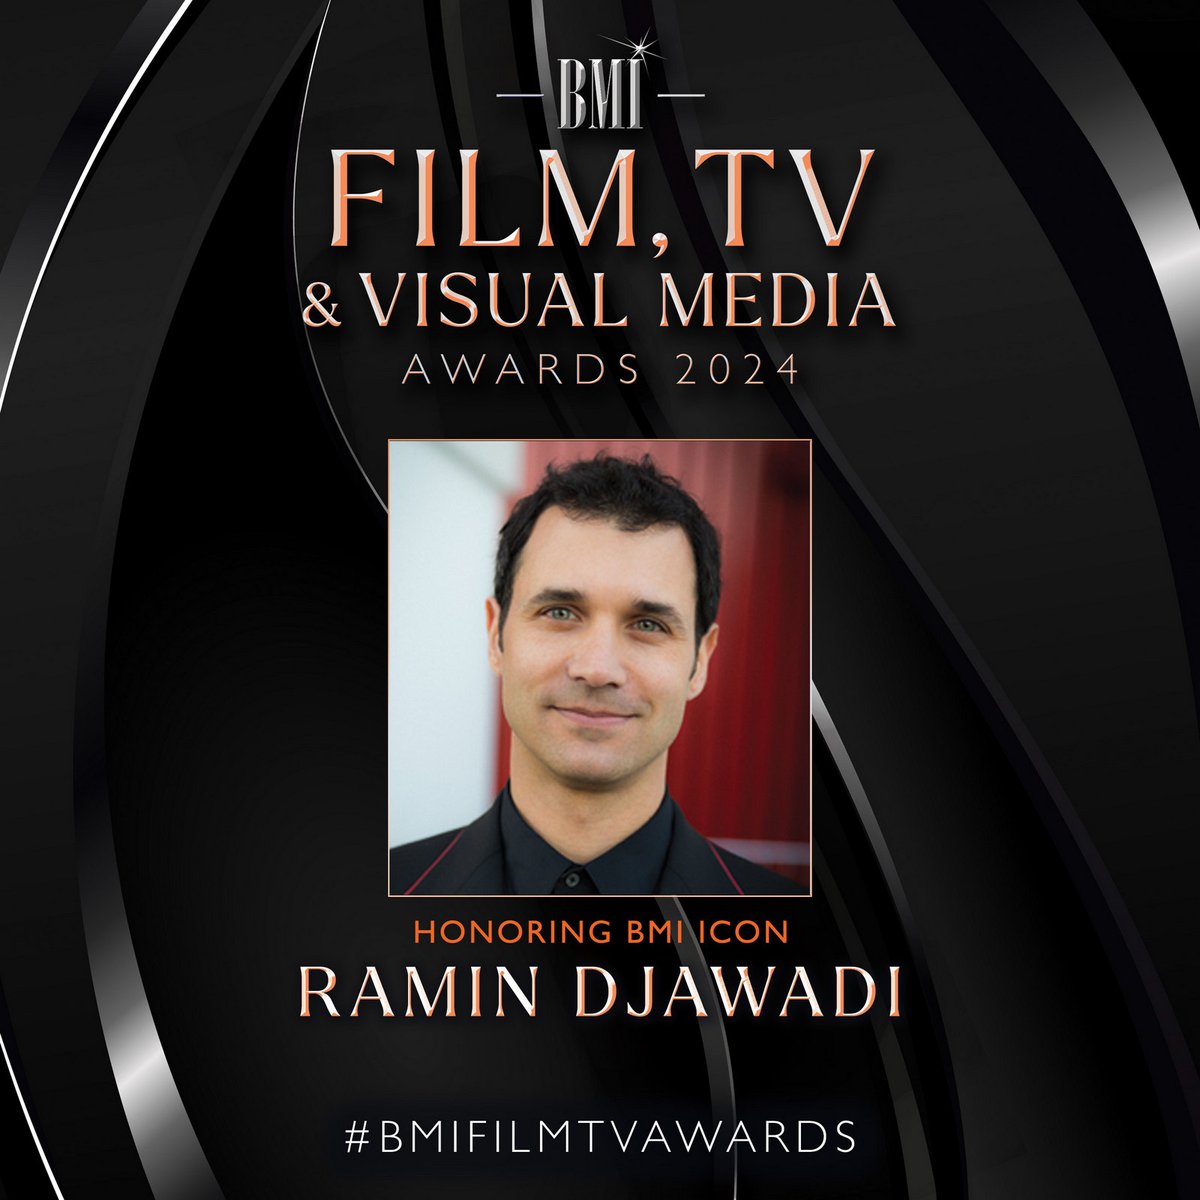 BMI Film, TV & Visual Media Awards 2024 - Ramin Djawadi [EN] soundtrackfest.com/en/news/bmi-fi… [ES] soundtrackfest.com/es/noticias/bm… #BMIFilmTVAwards @bmi @Djawadi_Ramin